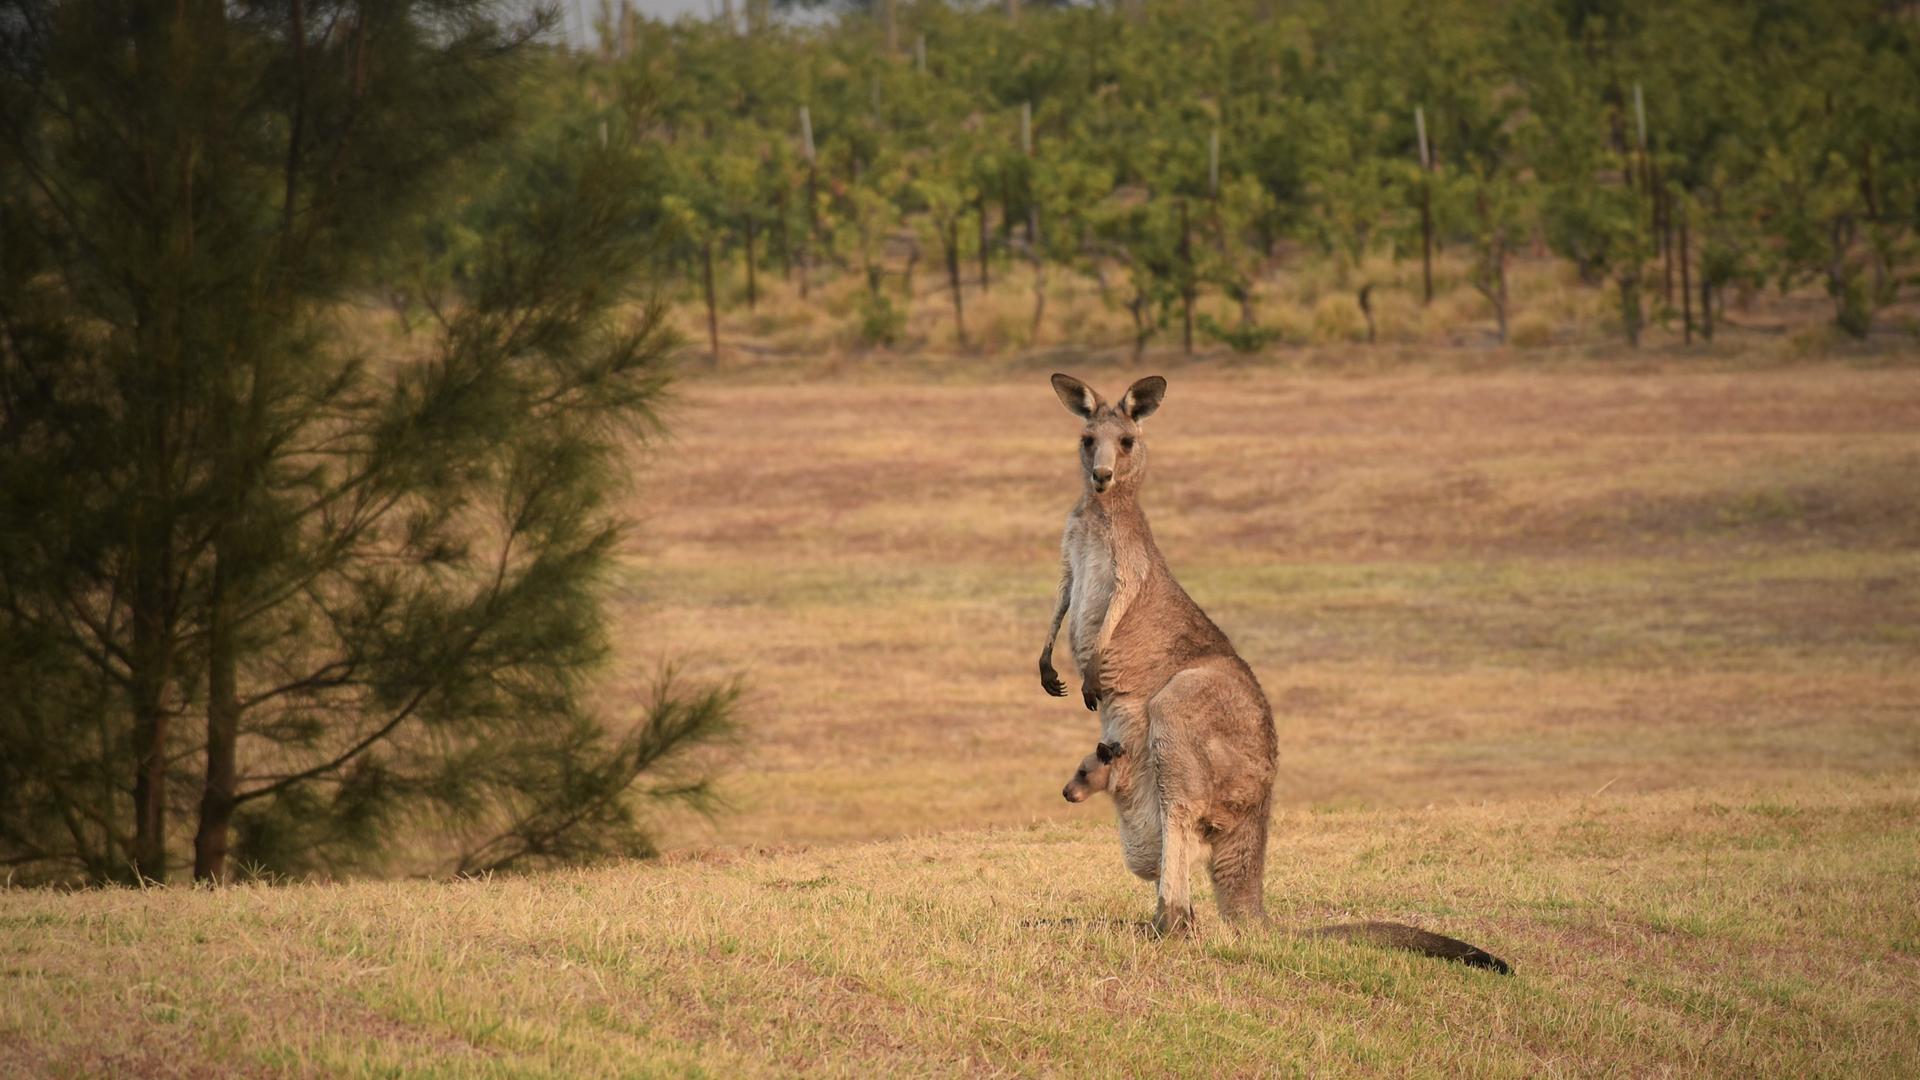 Ein Kanguru steht aufrecht mit aufgestellten Ohren und aufmerksamem Blick Richtung Kamera. Aus dem Beutel schaut ein Känguru-Baby in eine andere Richtung.